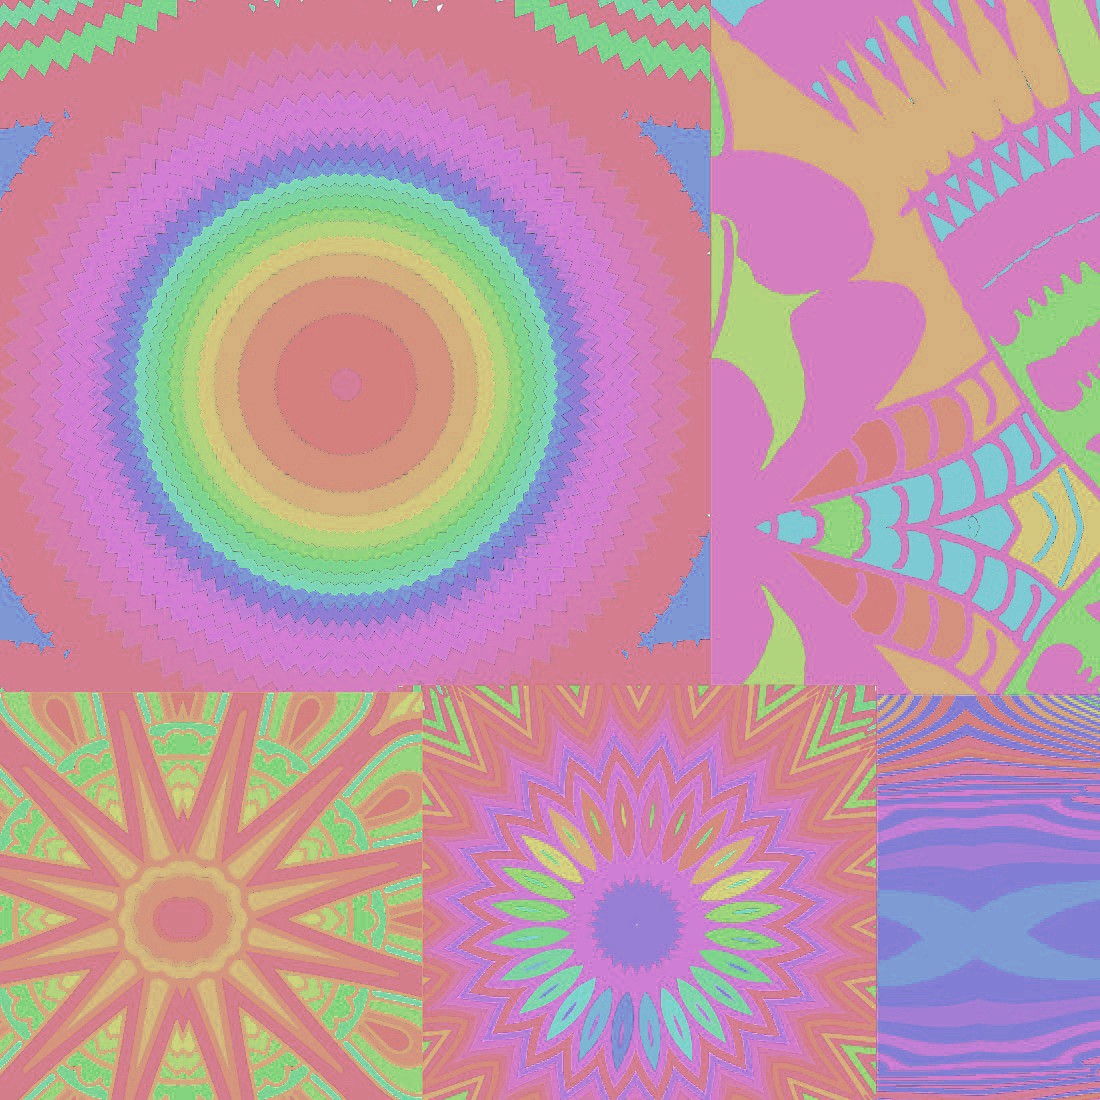 Pastel Mandala Inspired Background Cover Image.